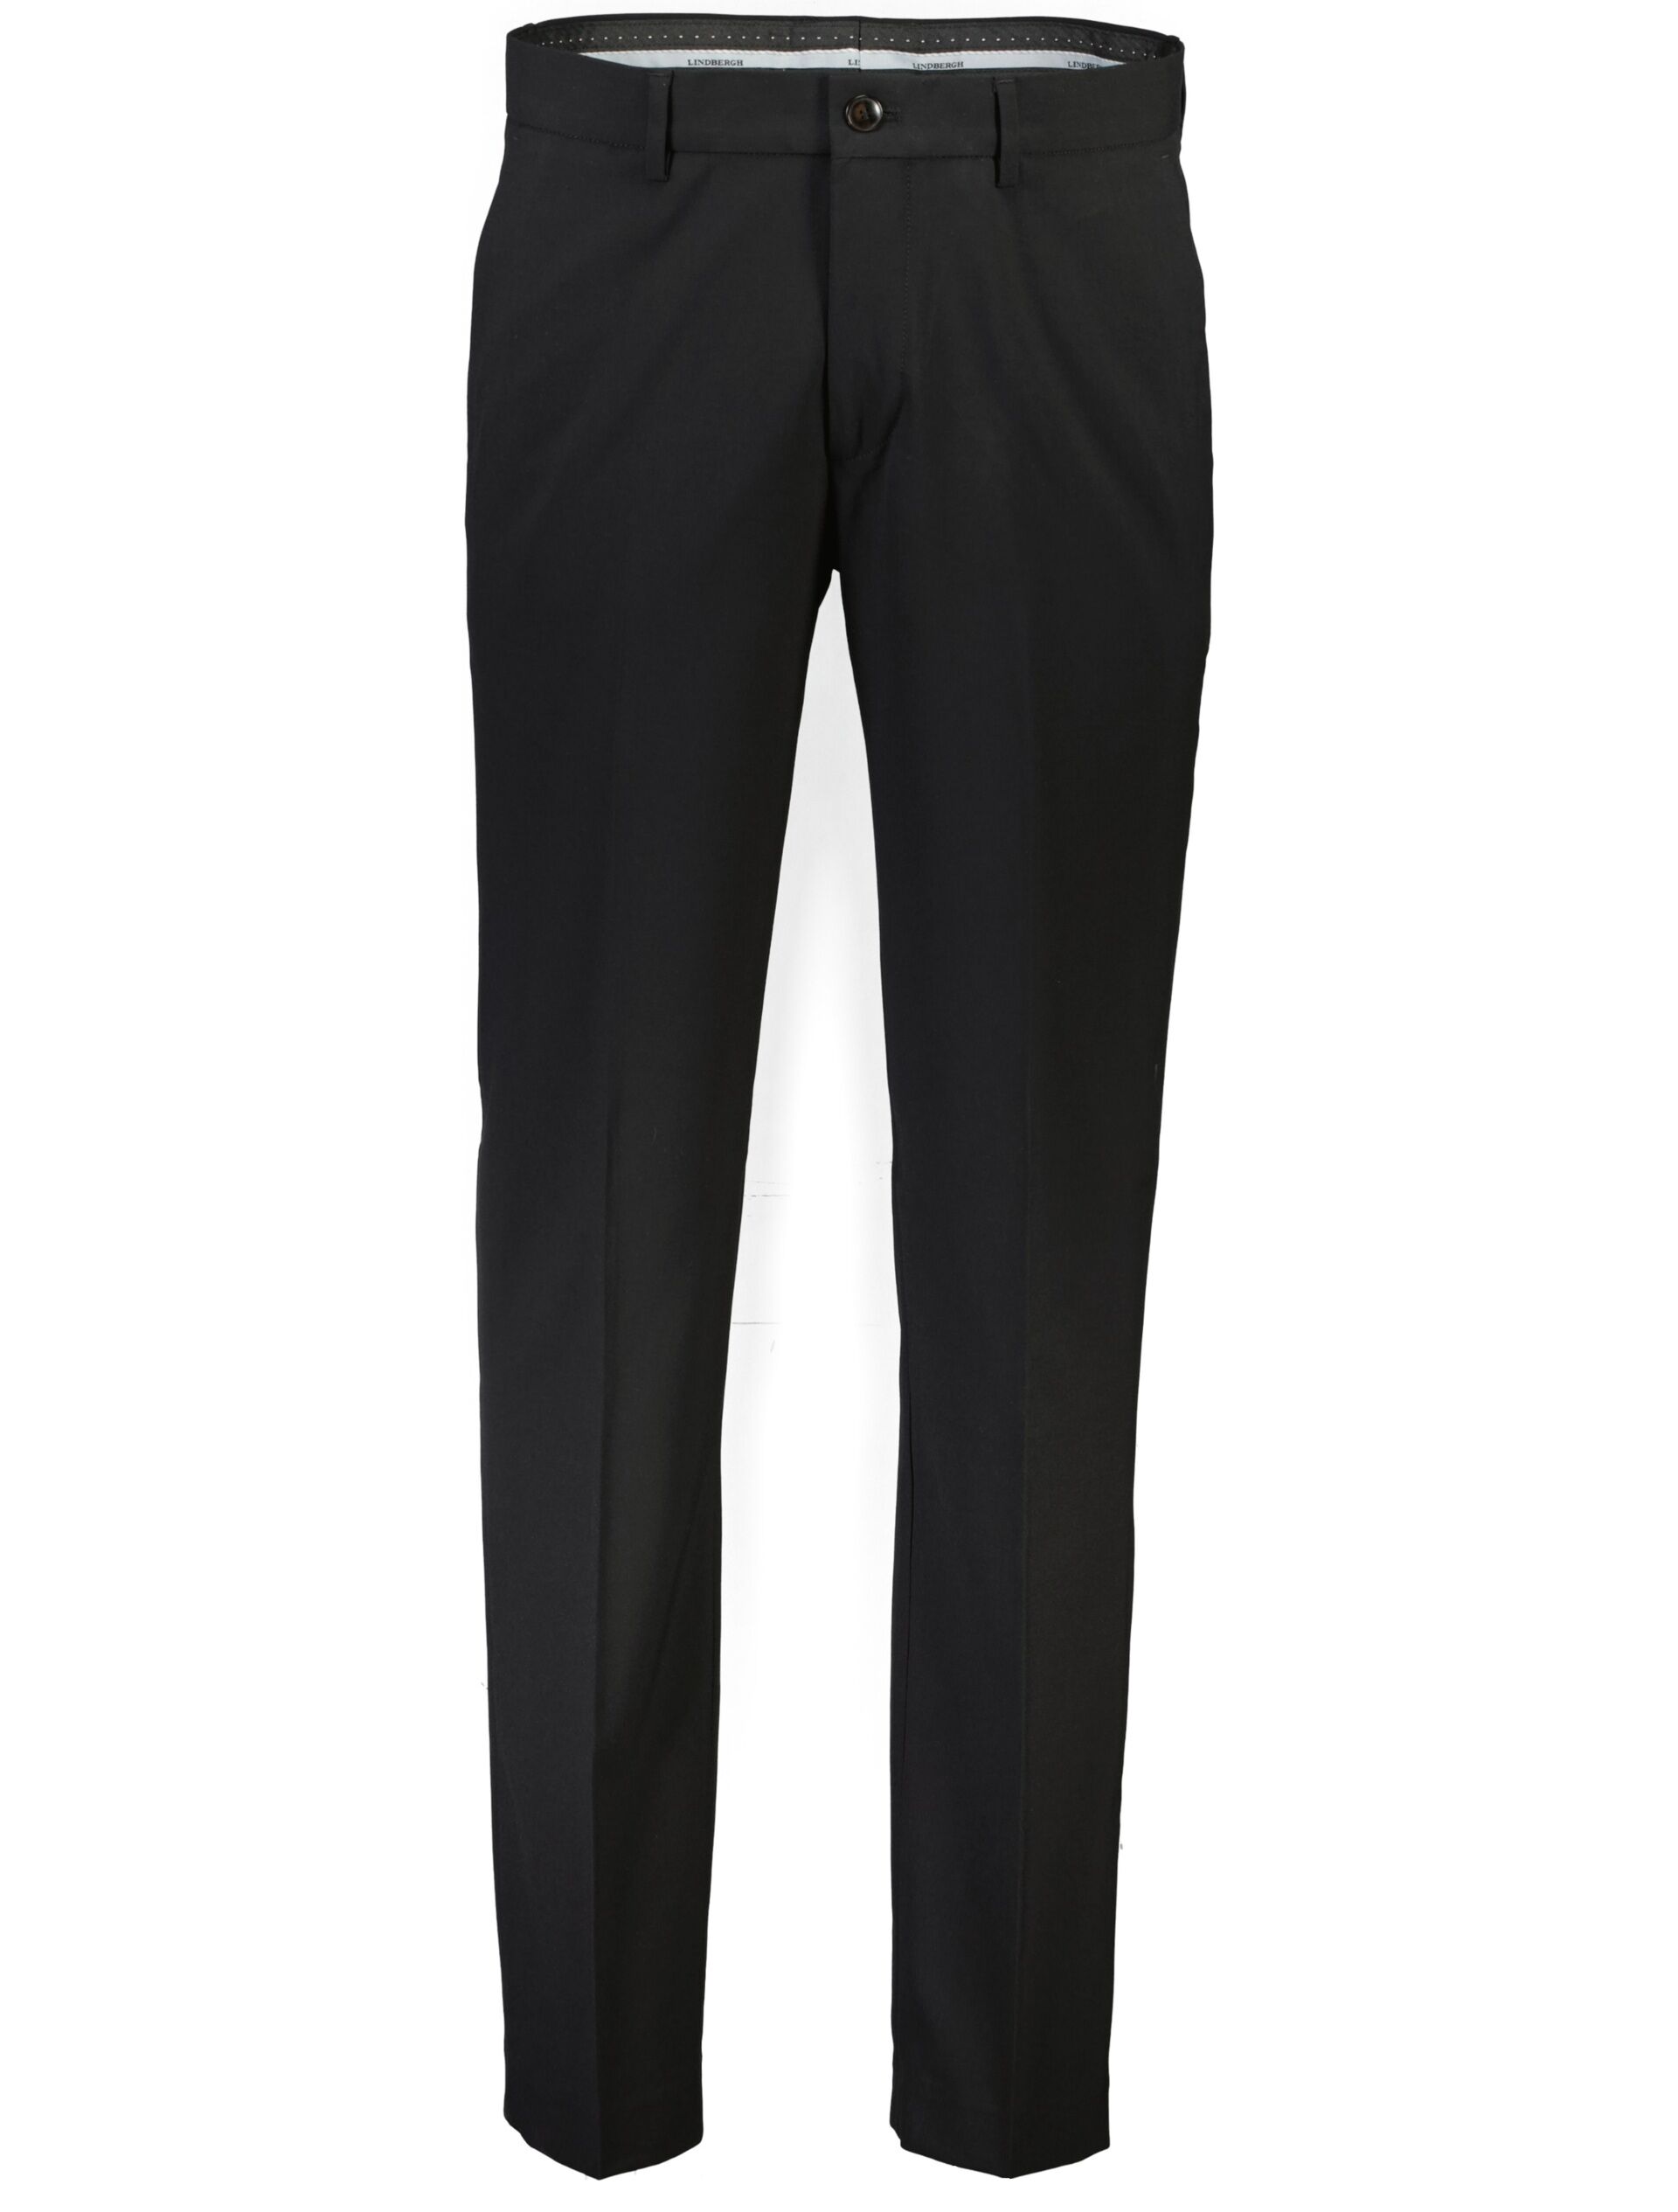 Suit pants Suit pants Black 30-046020-X